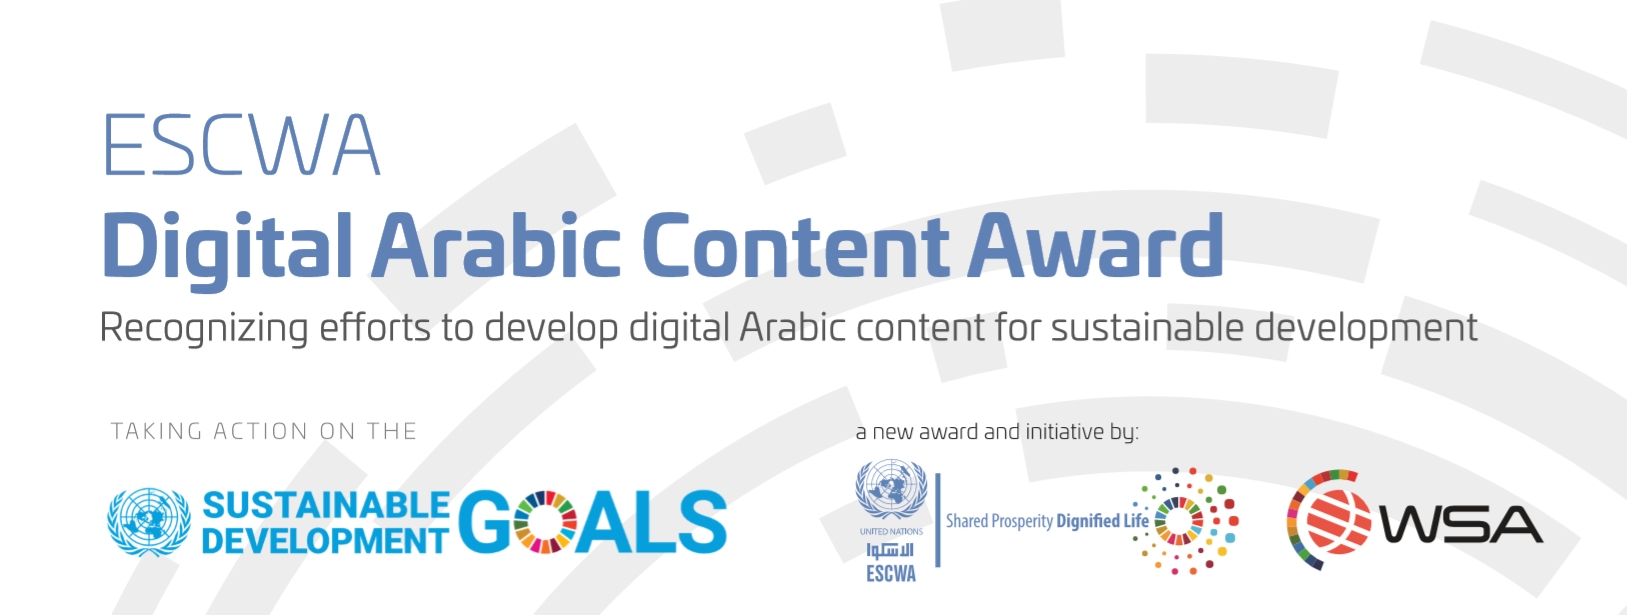 جائزة الإسكوا للمحتوى الرقمي العربي